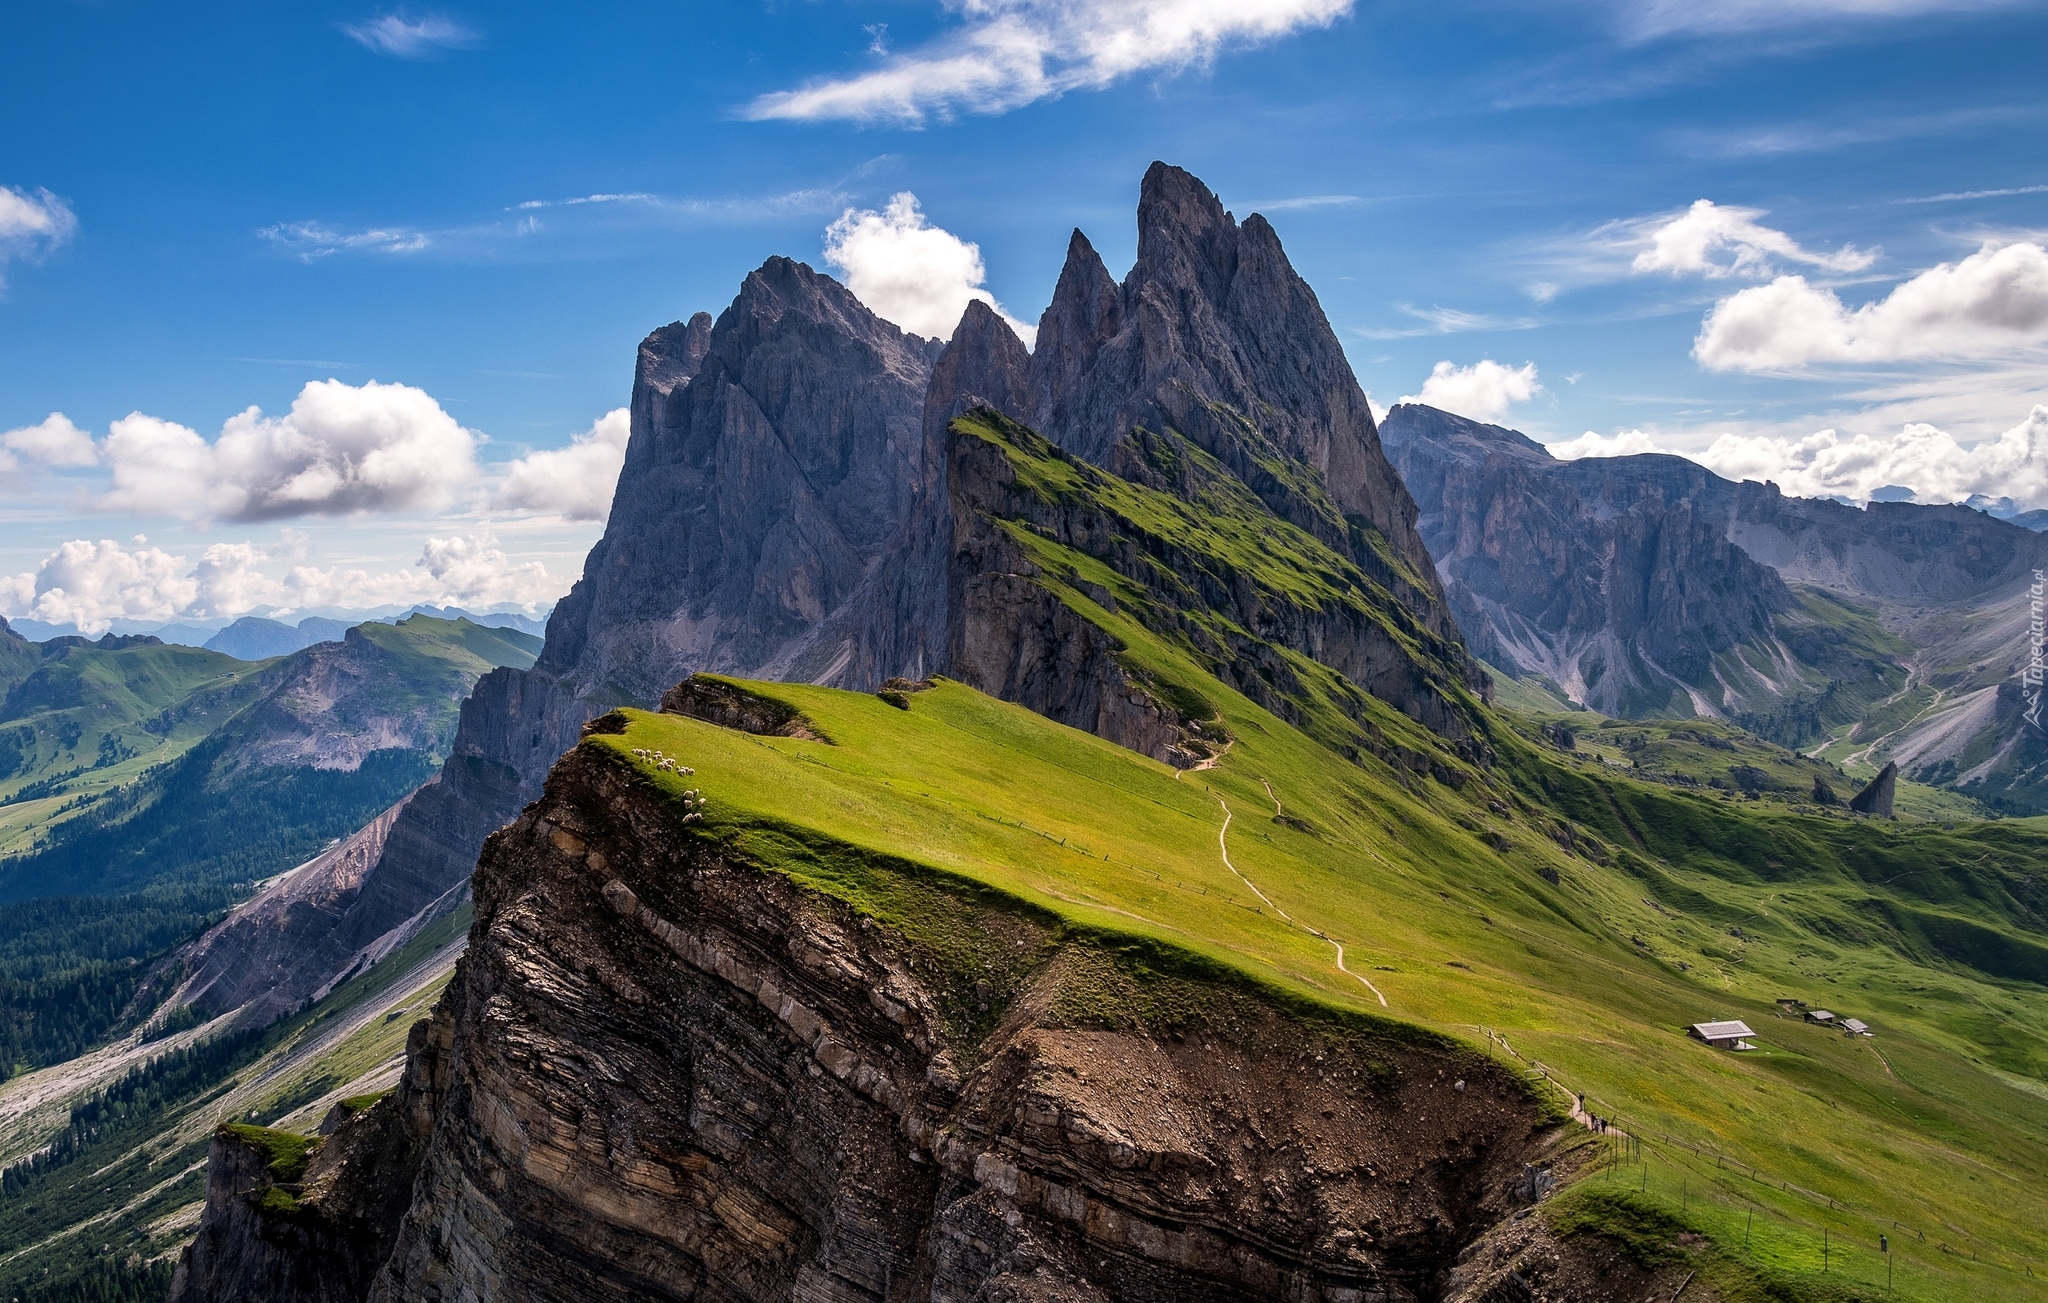 Góry Dolomity, Masyw Odle, Rezerwat przyrody Puez-Geisler, Doliny,  Domki, Prowincja Bolzano, Włochy